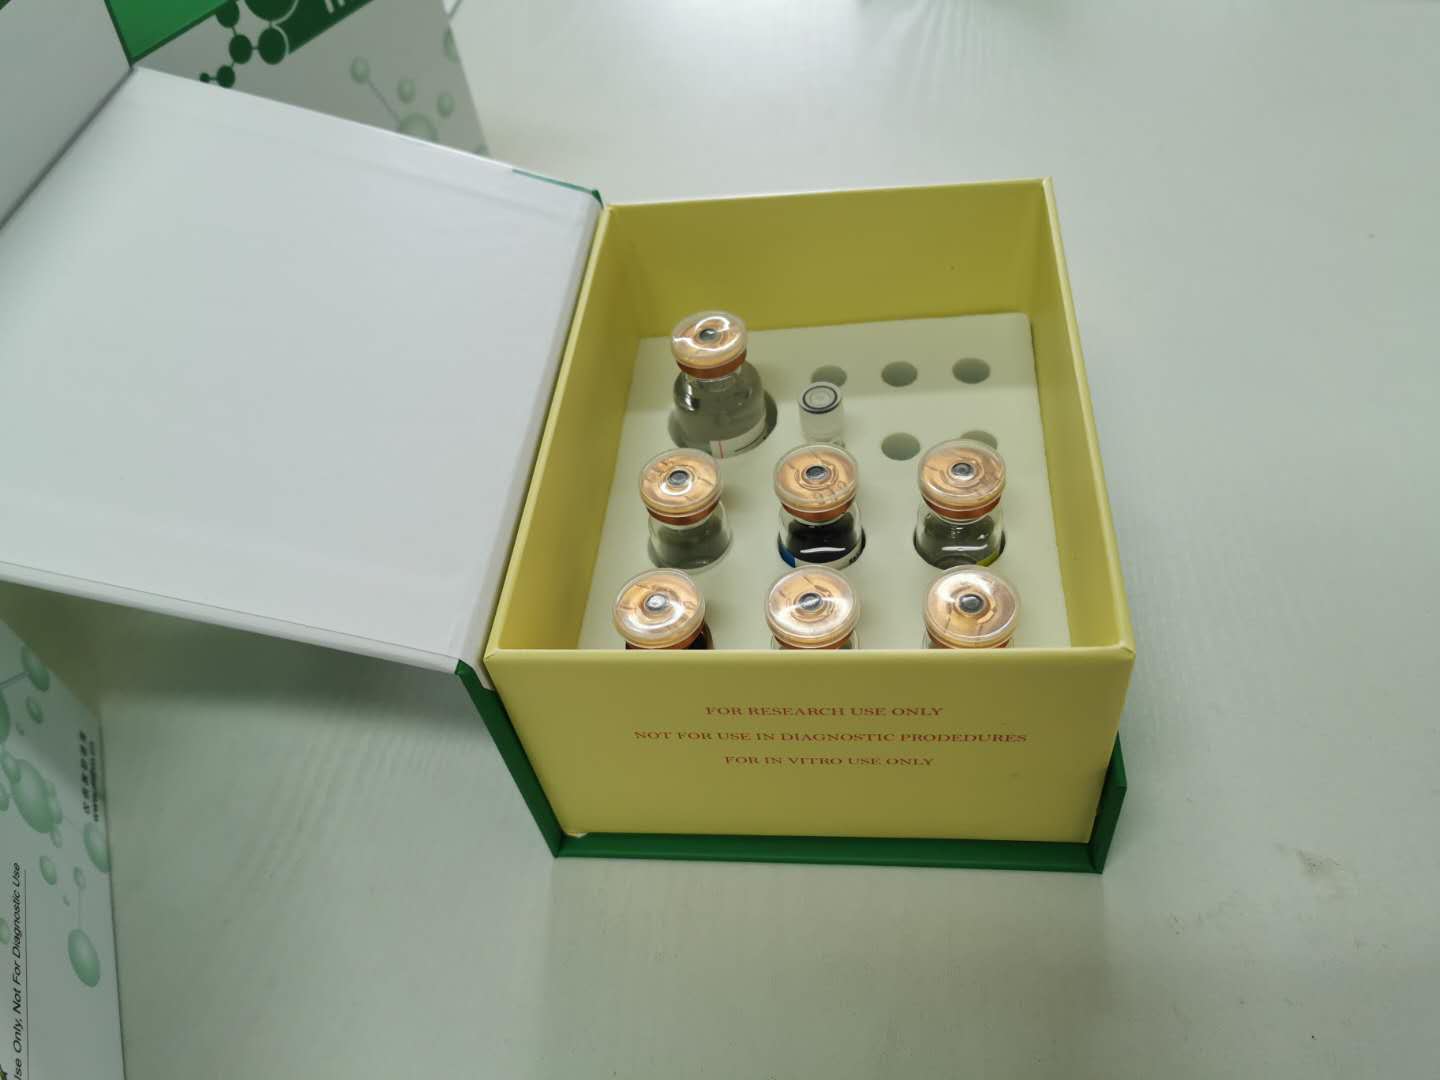 植物生长素抗体试剂盒产品用途